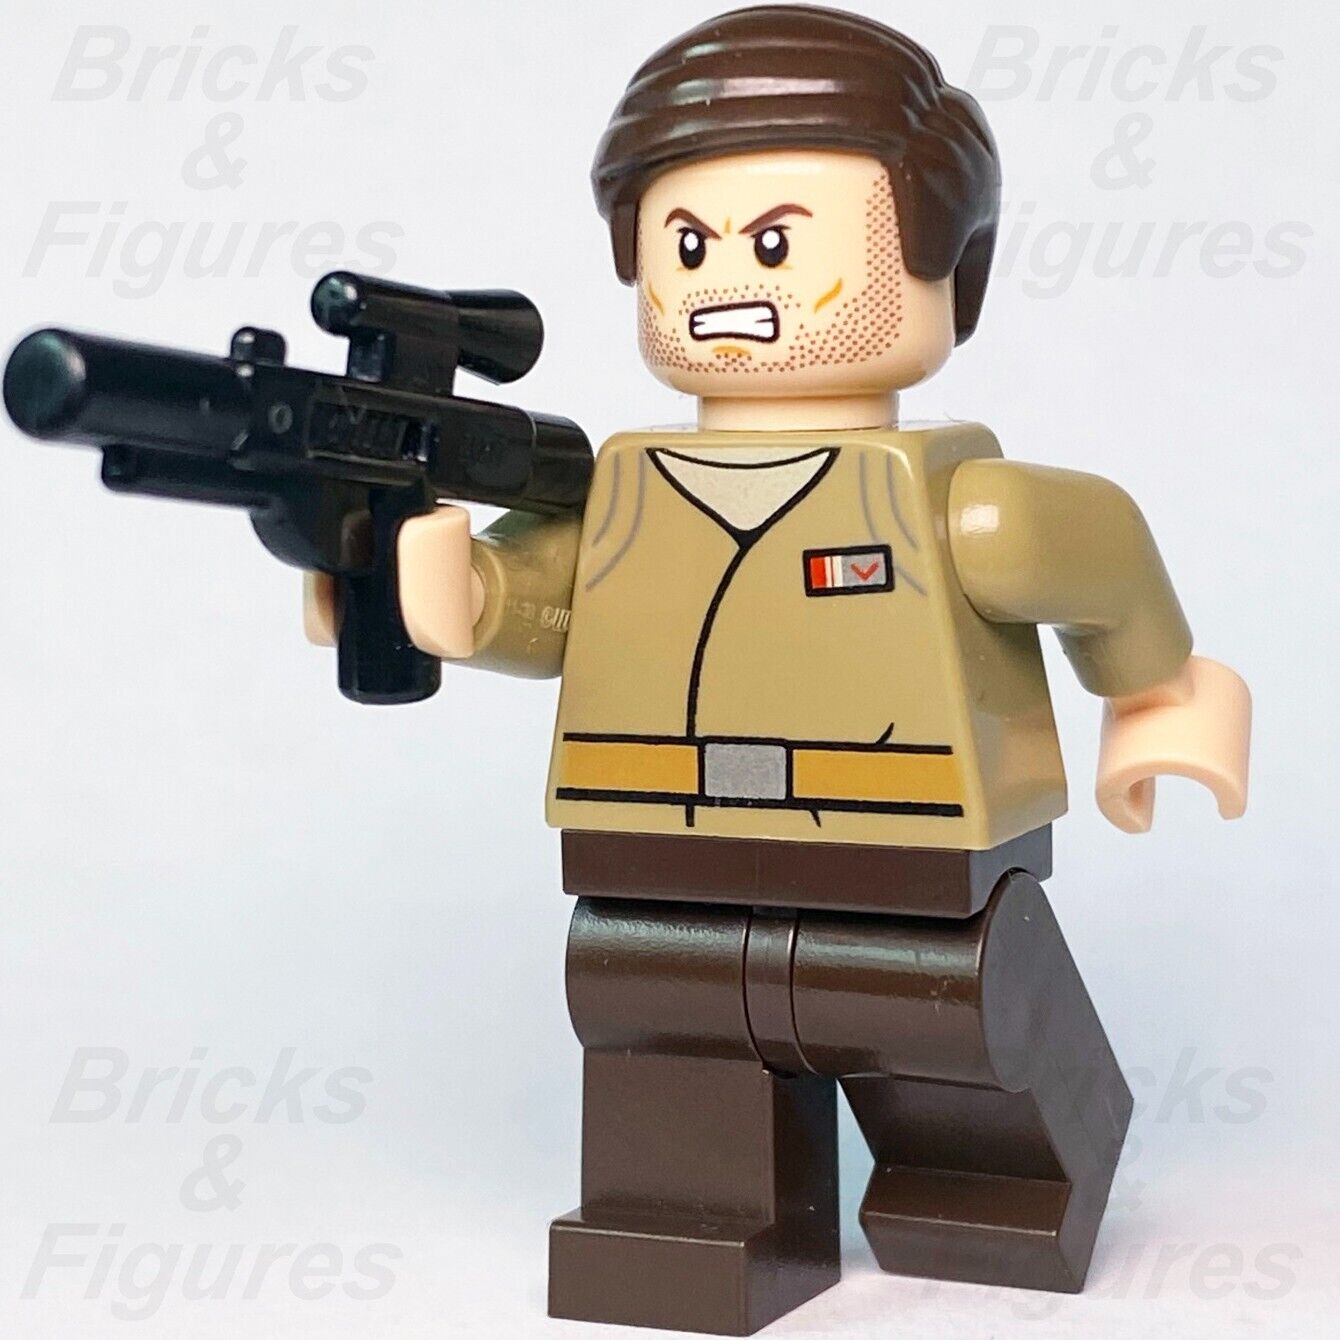 LEGO Star Wars Resistance Officer Minifigure Major Brance 75184 sw0876 Trooper - Bricks & Figures